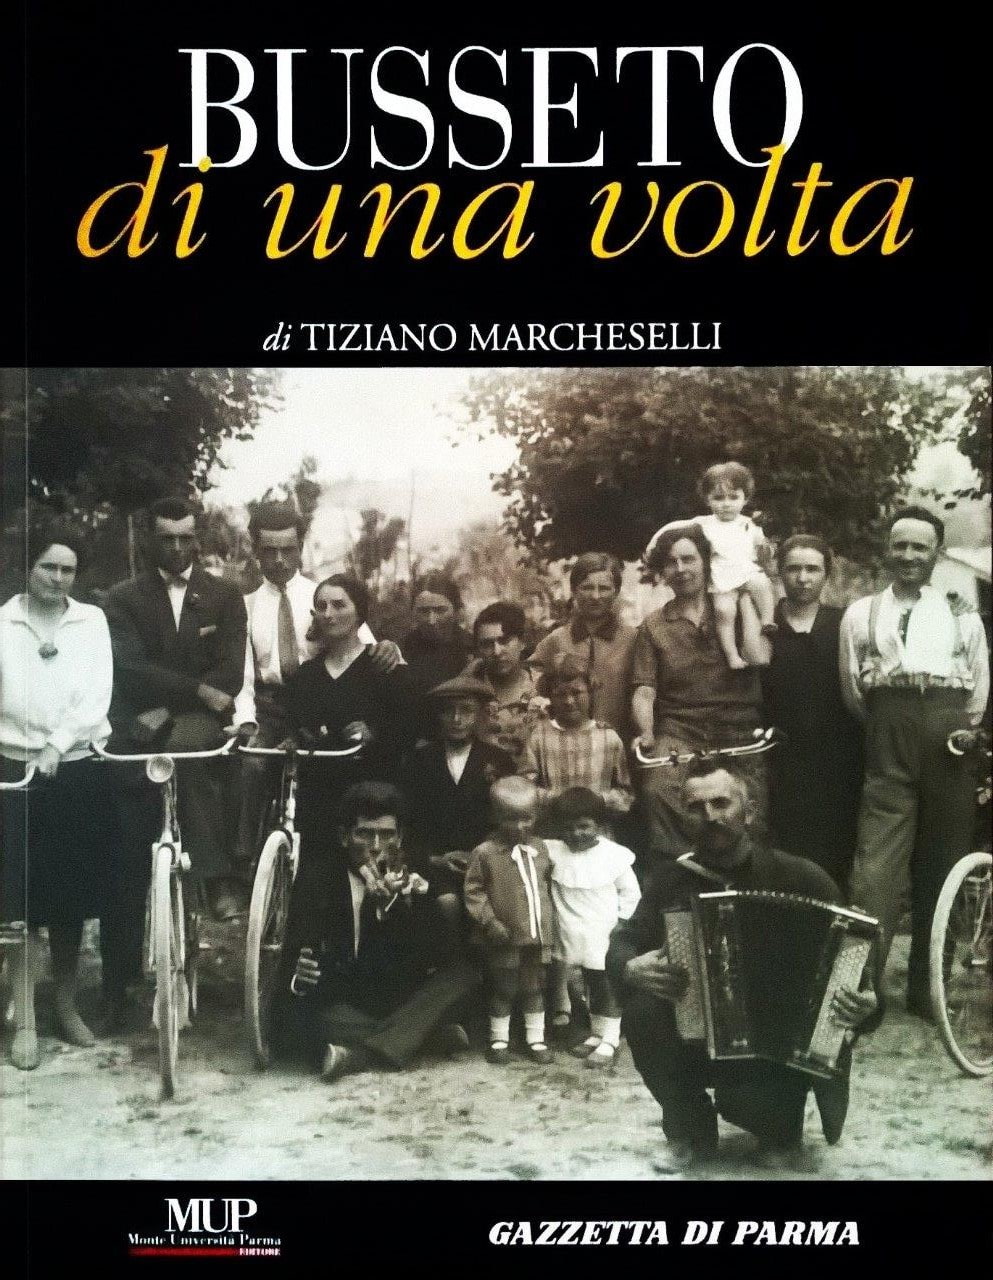 Tiziano Marcheselli, Busseto di una volta, Parma, Mup Editore / Gazzetta di Parma (Stamperia), 2010, prefazione di Emilio Mazzera e Luca Laurini